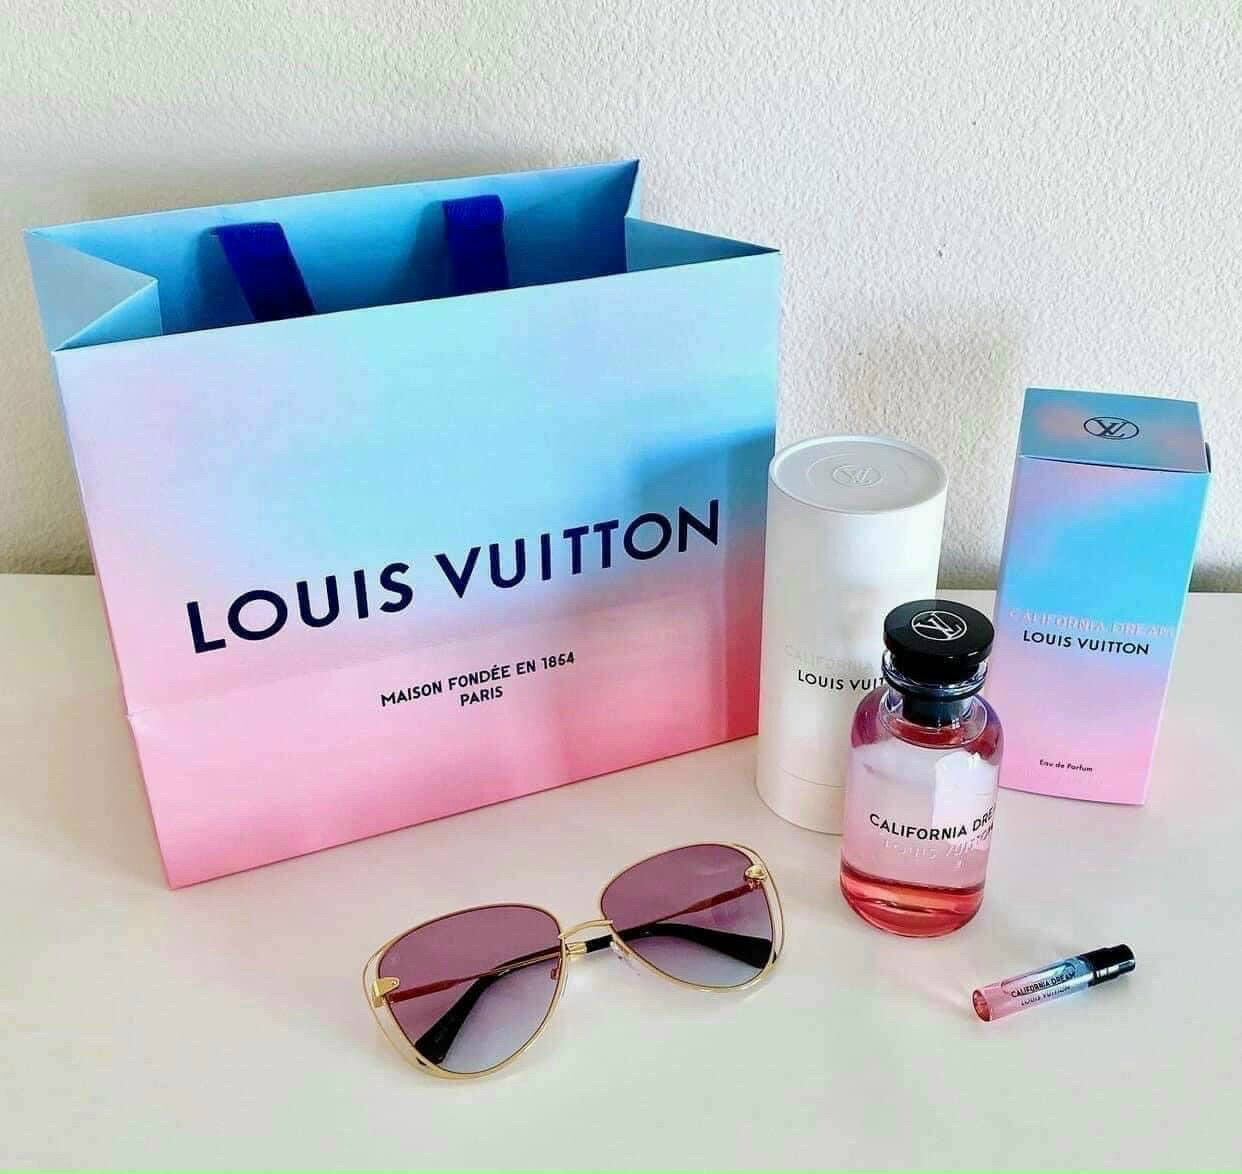 Louis Vuitton California Dream EDP  Nước hoa chính hãng 100 nhập khẩu  Pháp MỹGiá tốt tại Perfume168